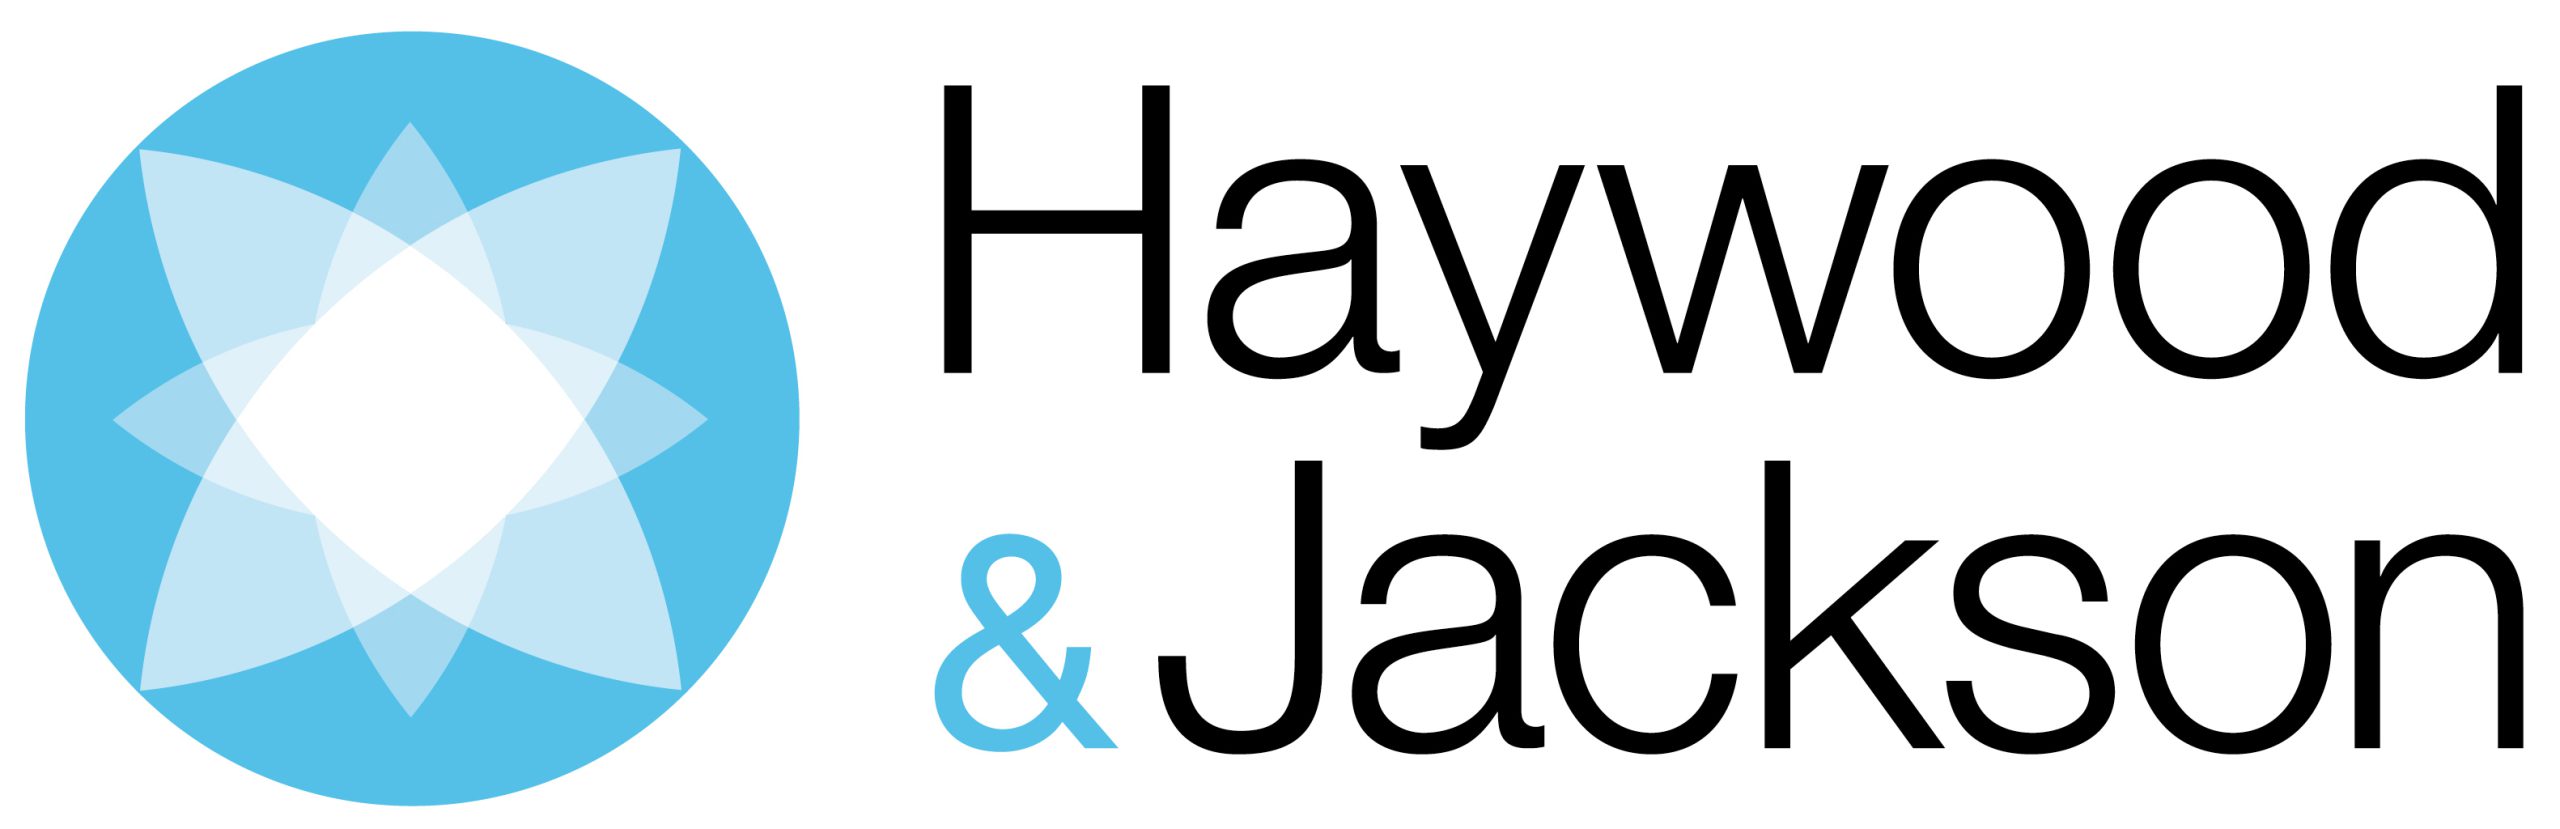 Haywood & Jackson - Hudson Marketing